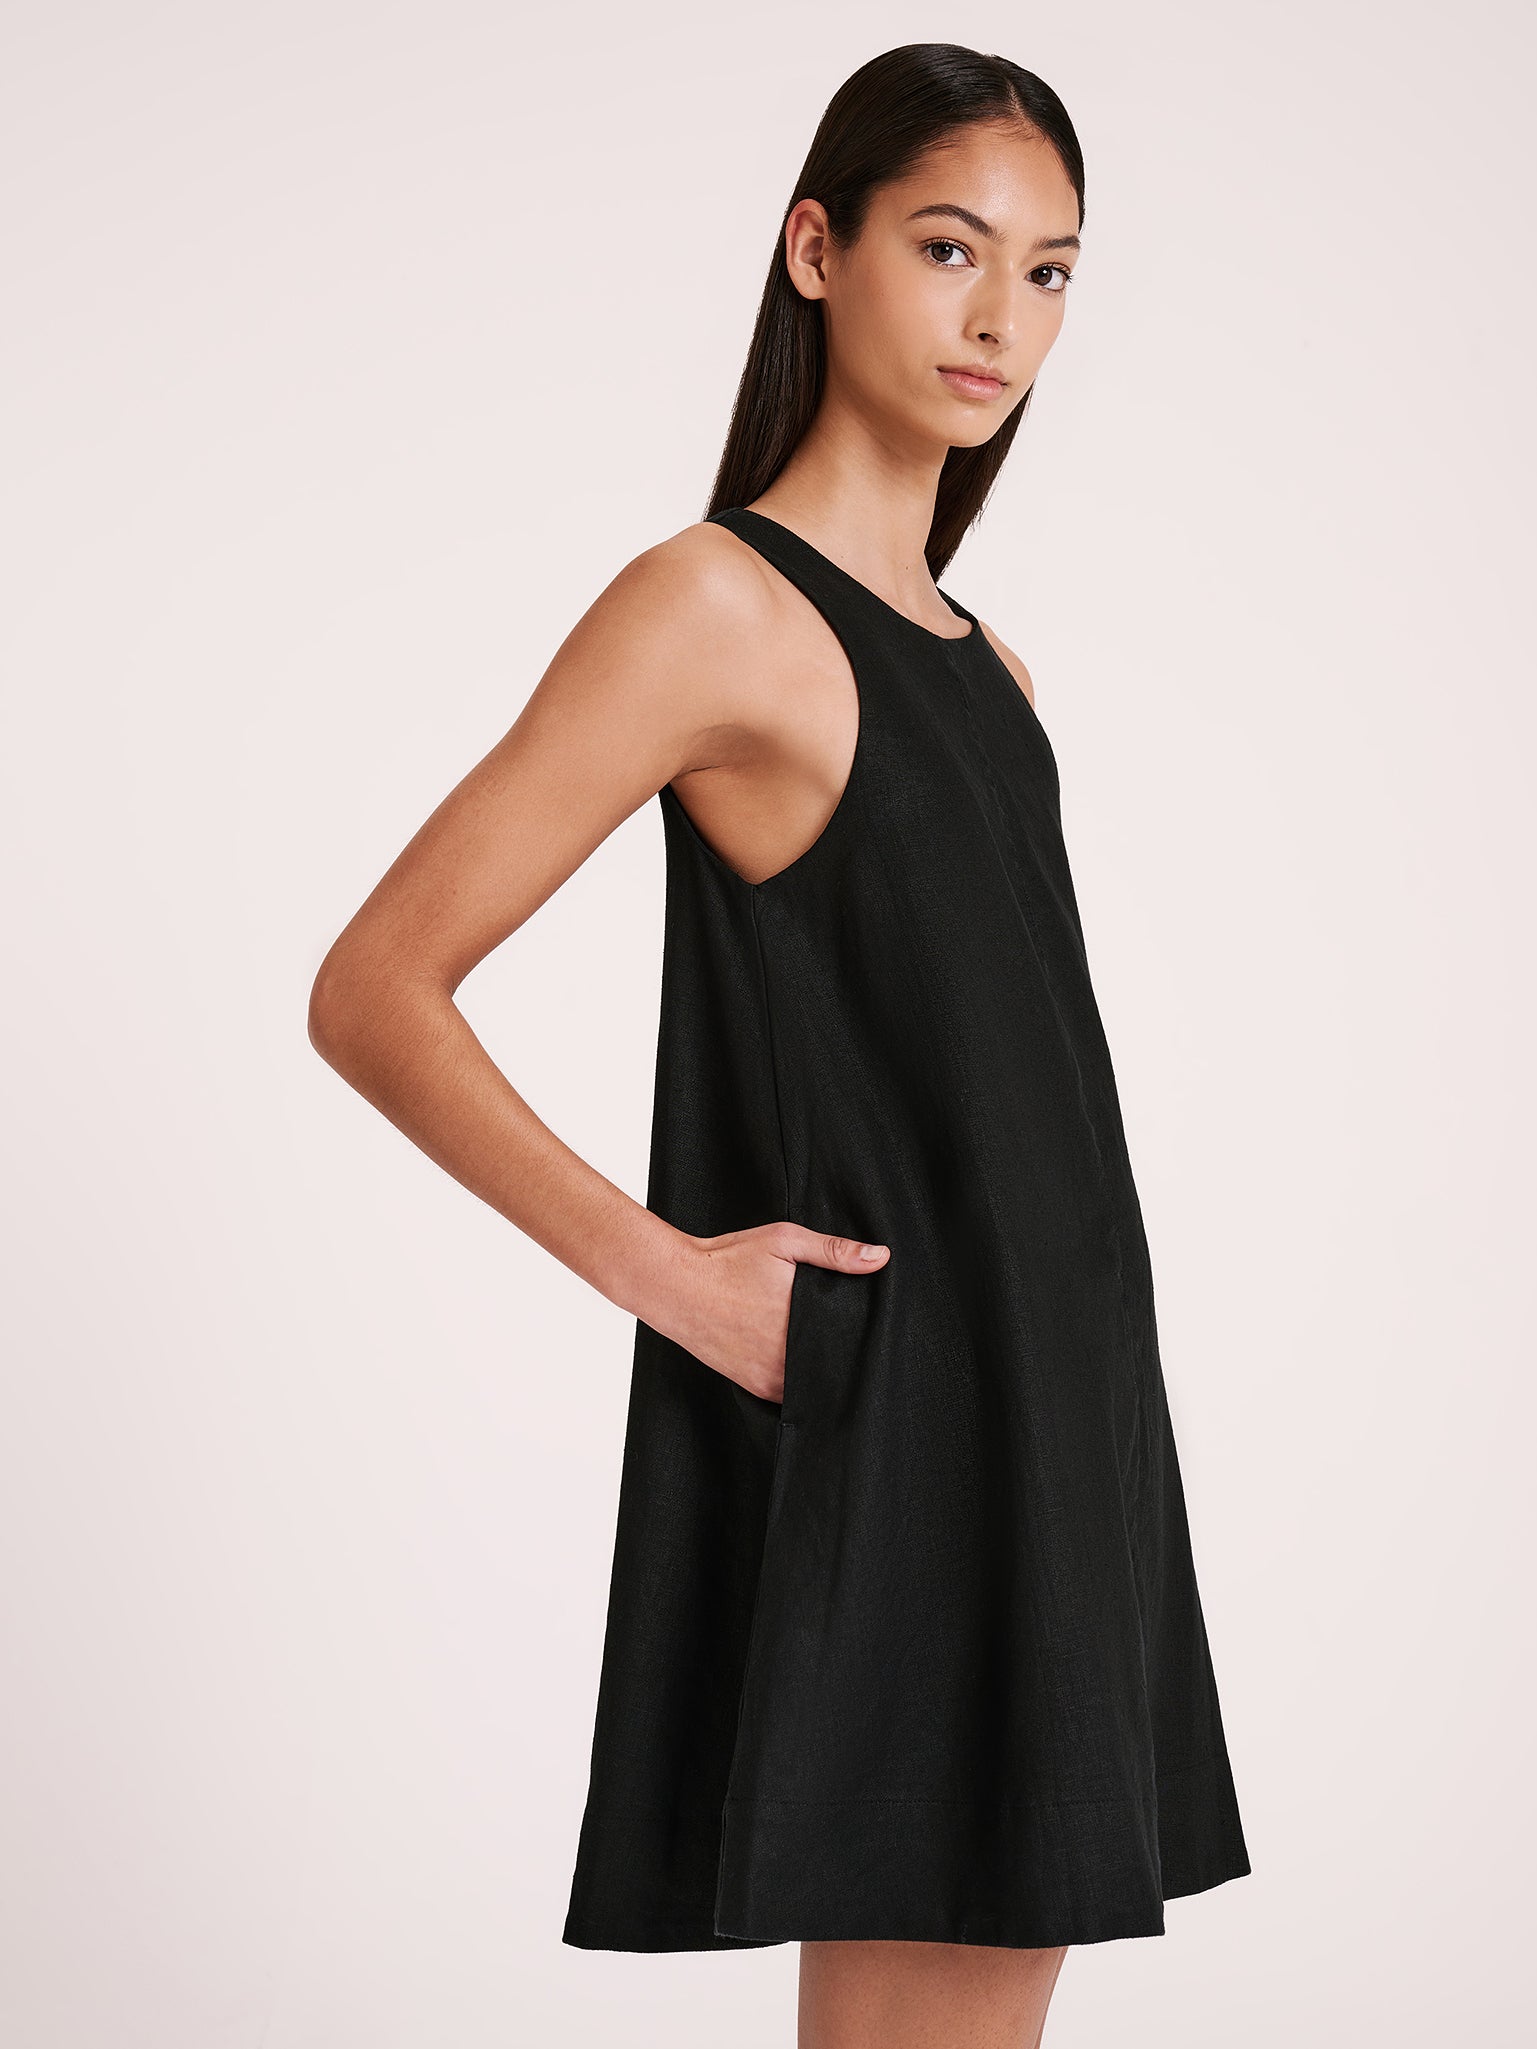 Nemi Linen Dress in Black